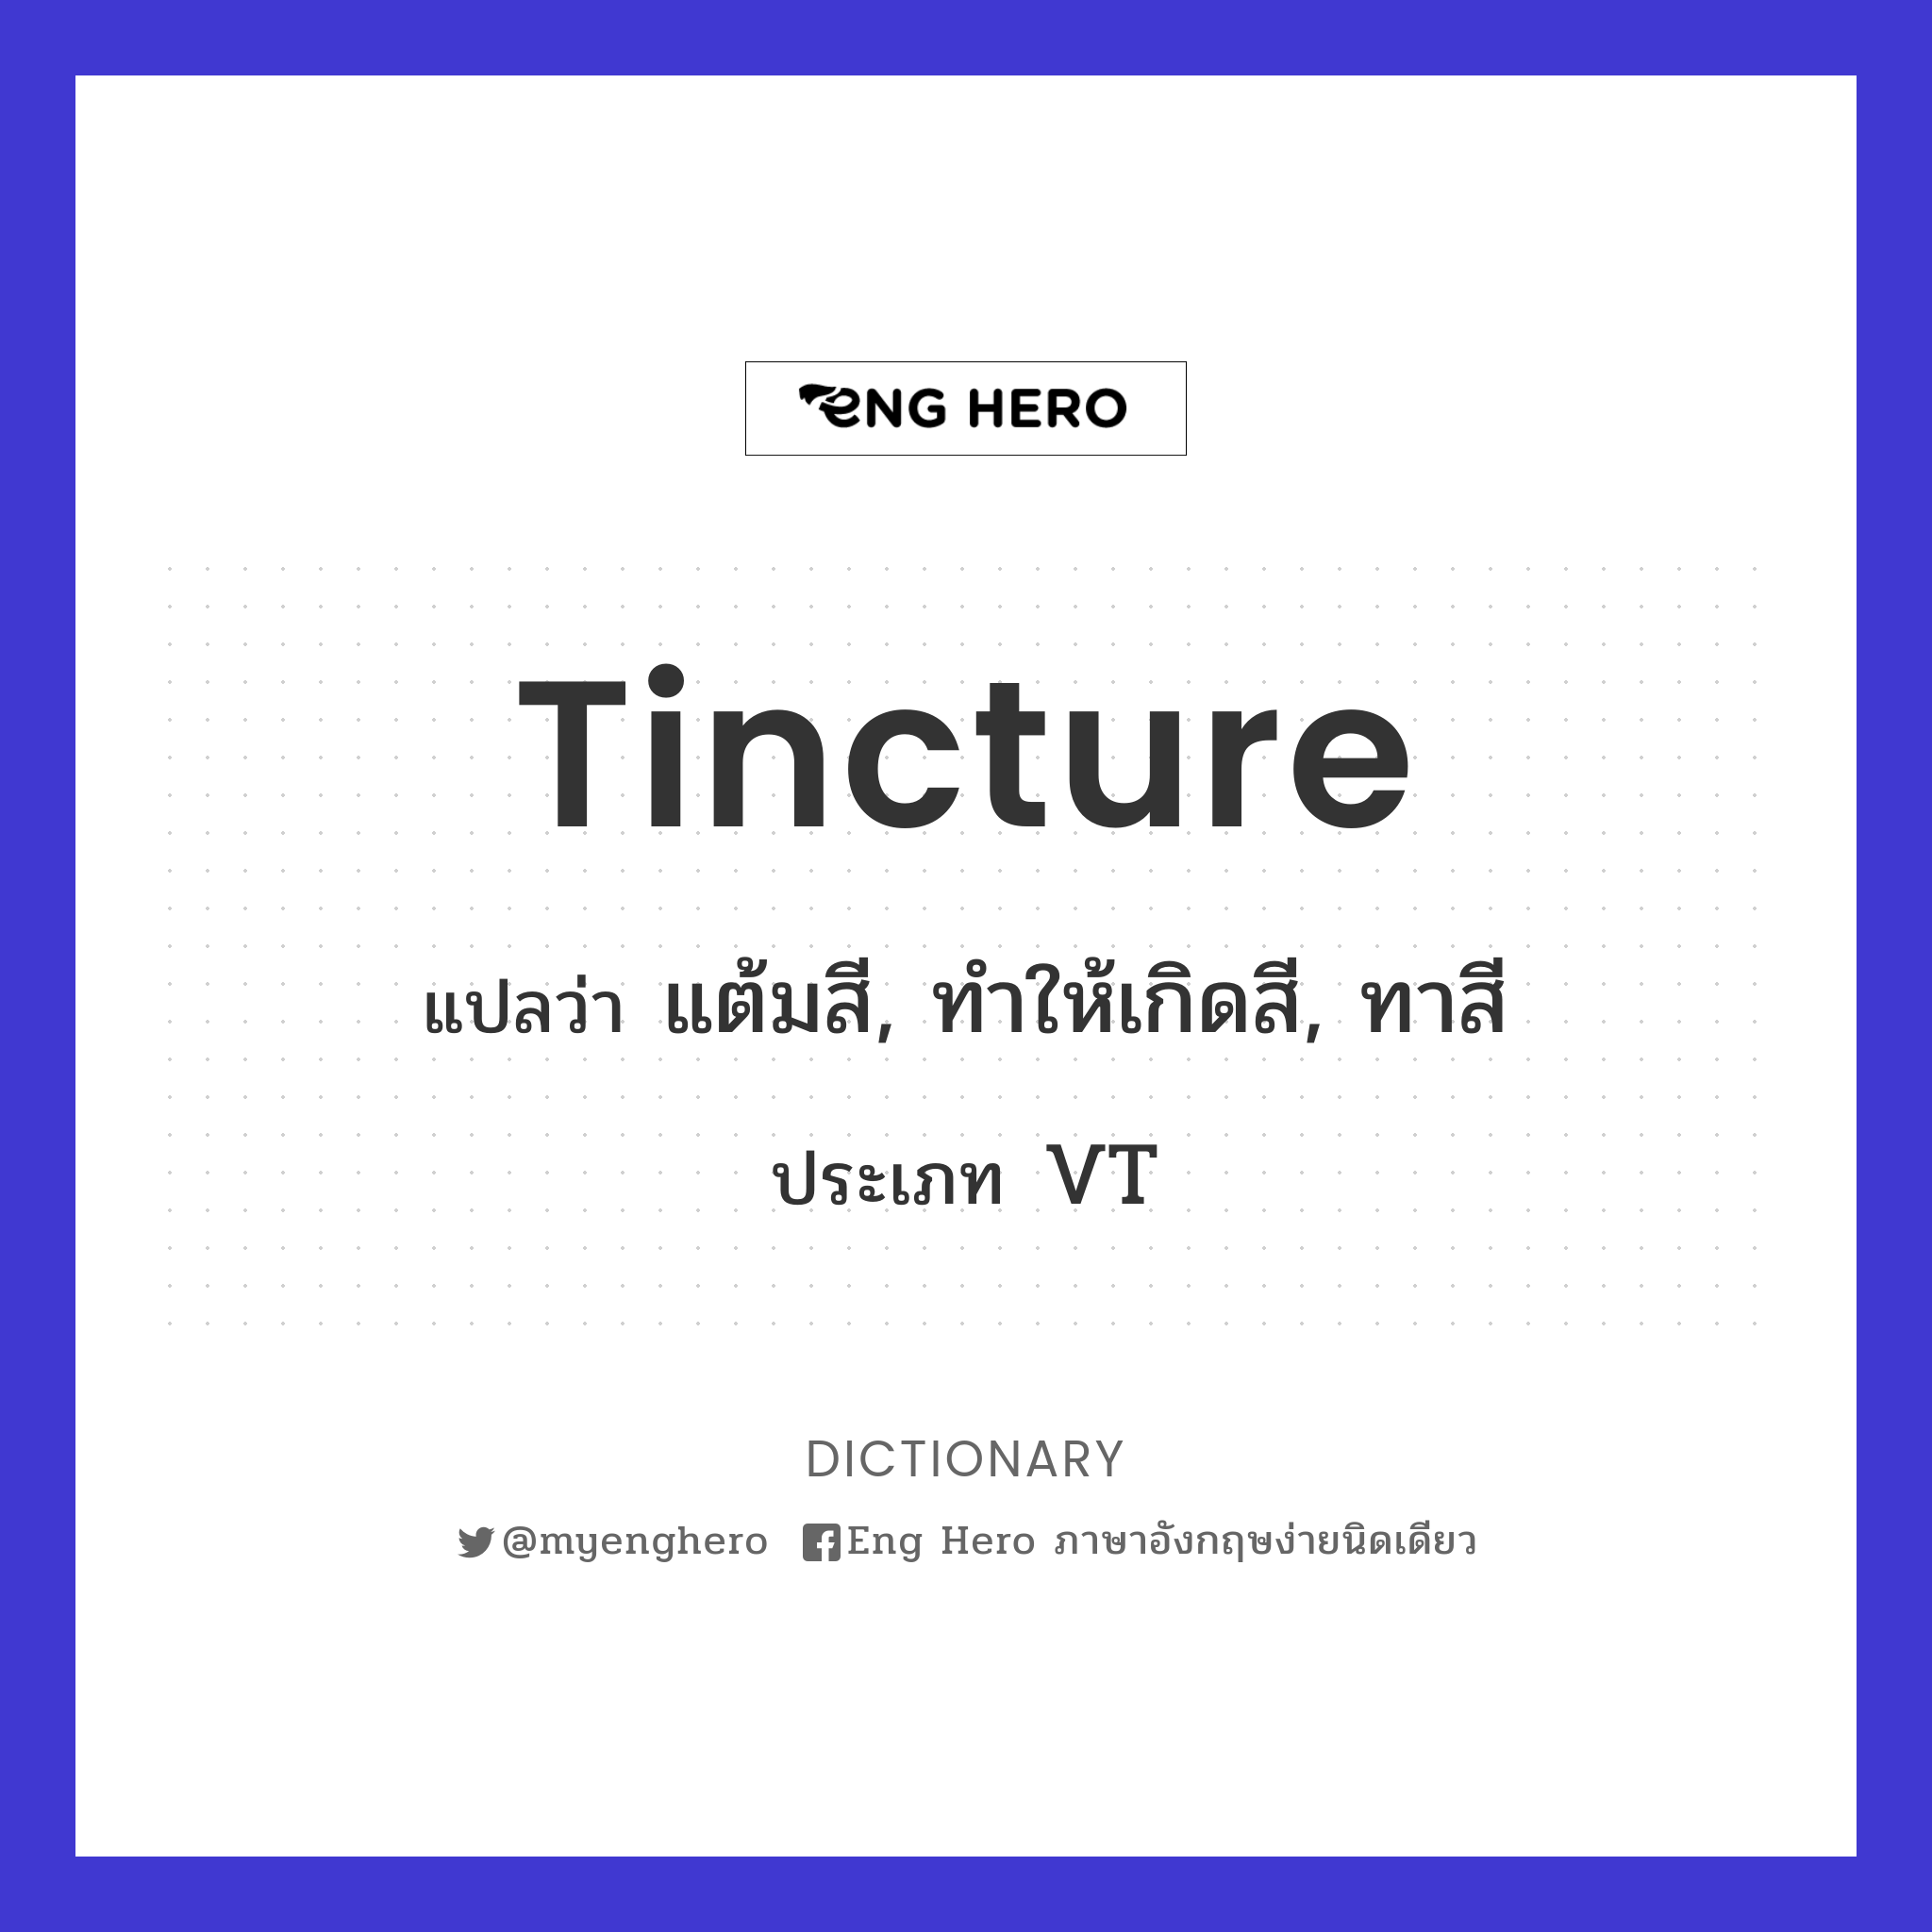 tincture